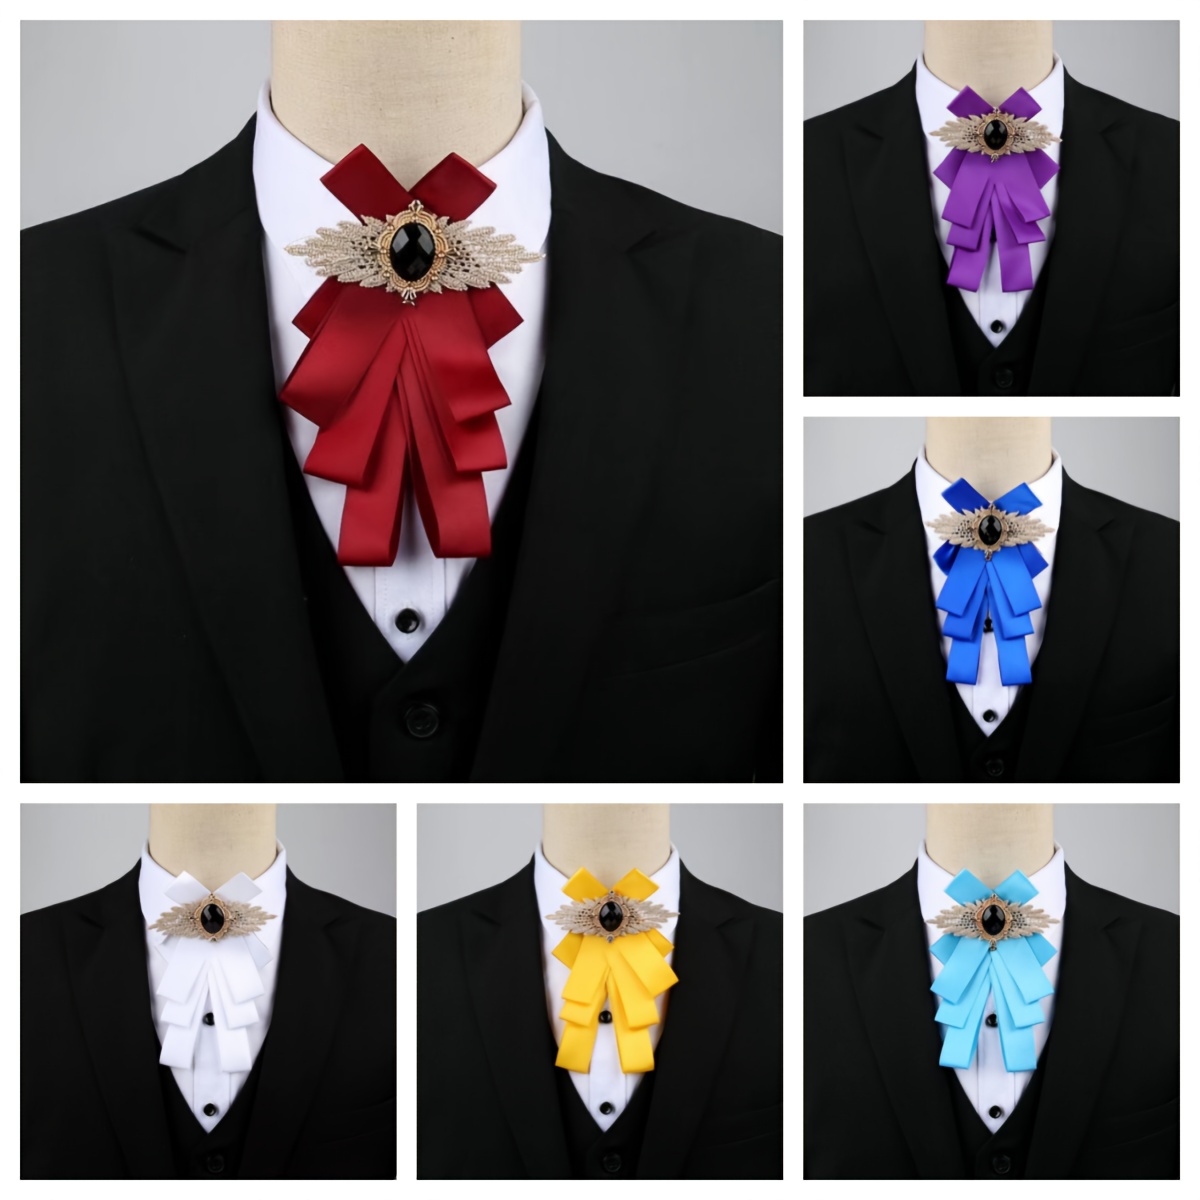 DIY / Brooch - Tie / Grosgrain and satin ribbons tie 